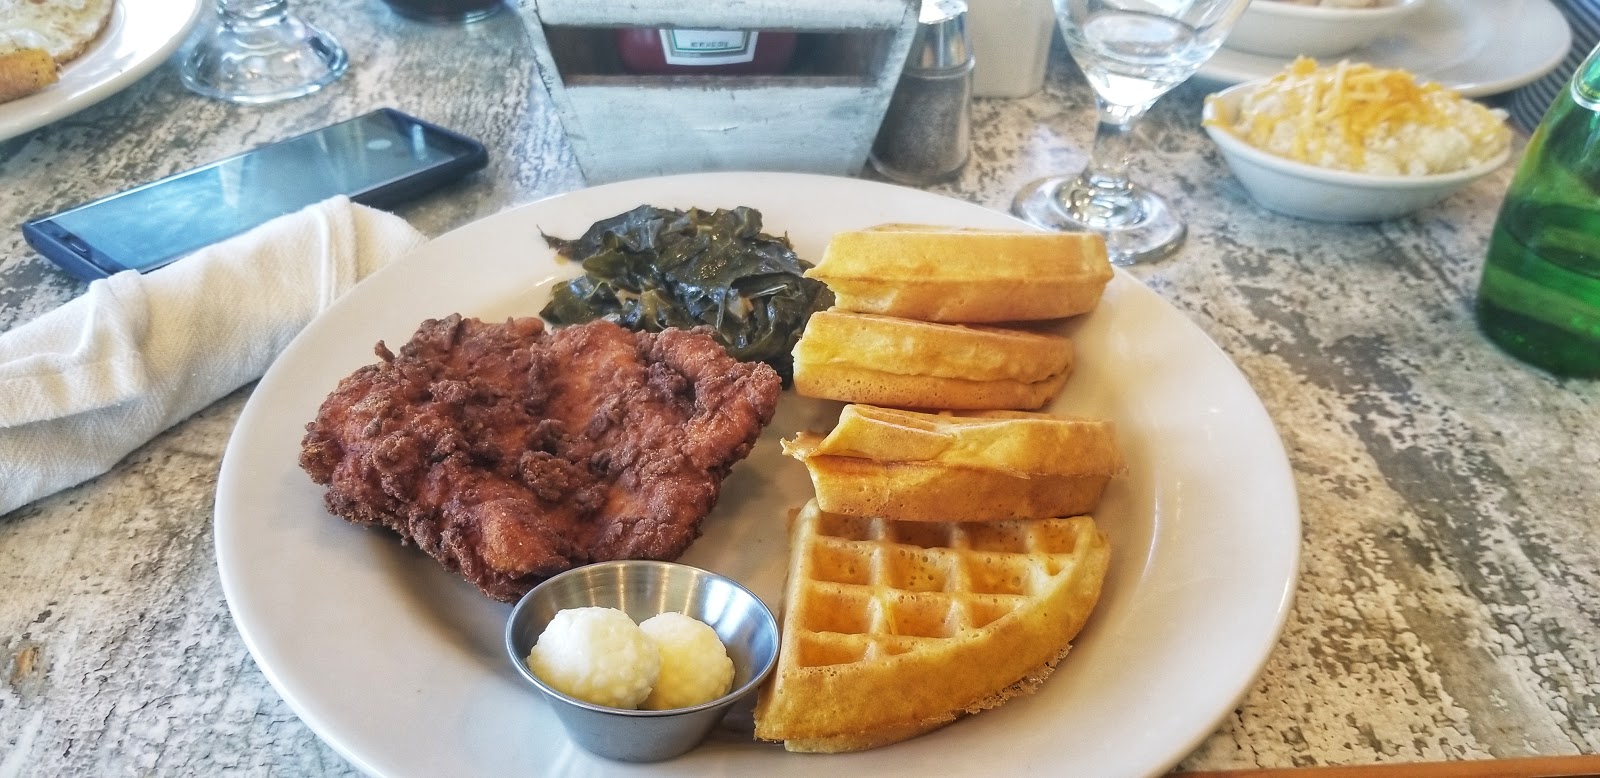 Chicken and Waffles at Huey's Southern Eats